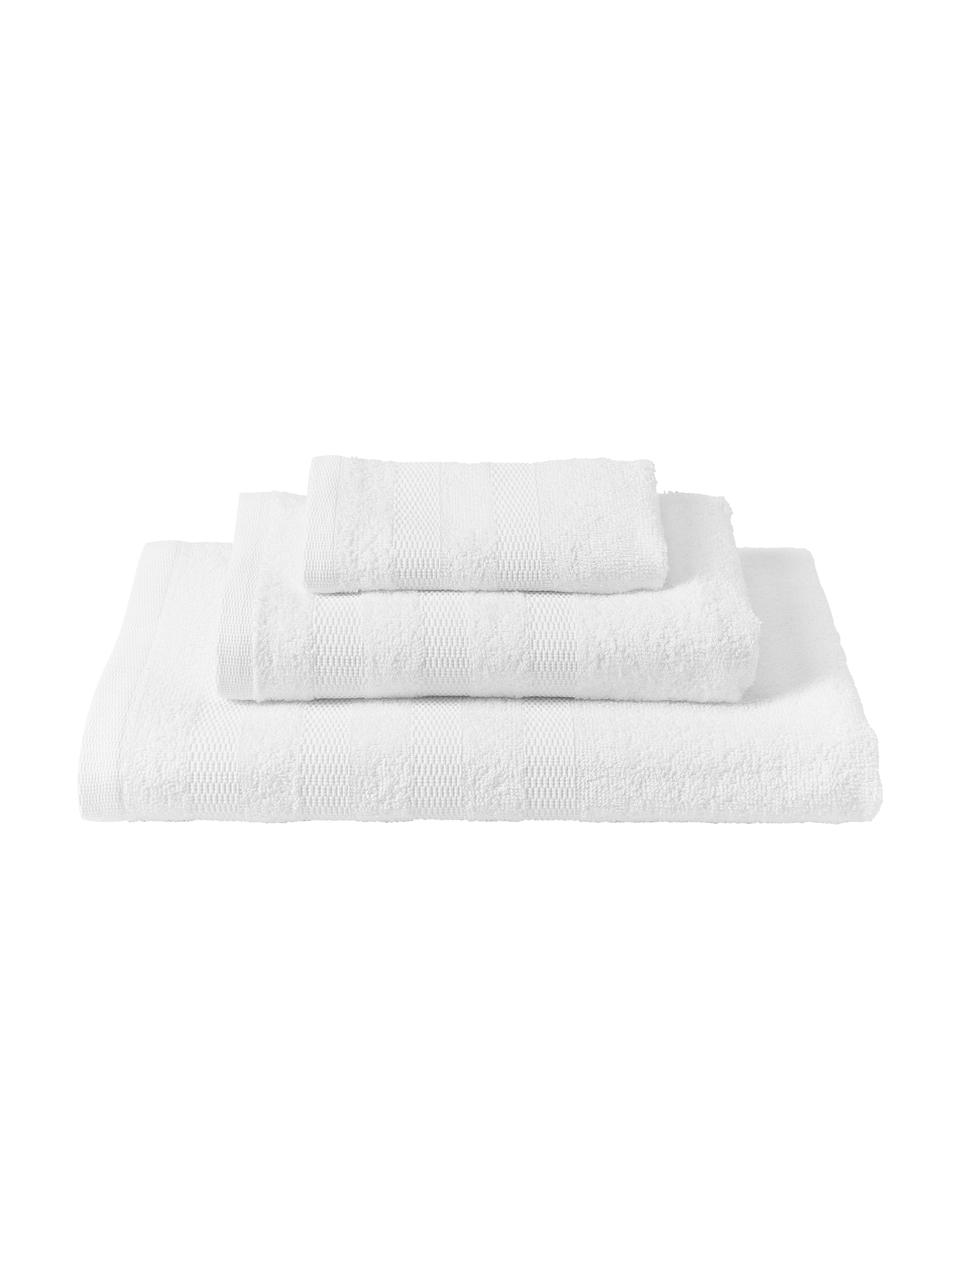 Set de toallas de algodón Camila, 3 uds., Blanco, Set de diferentes tamaños